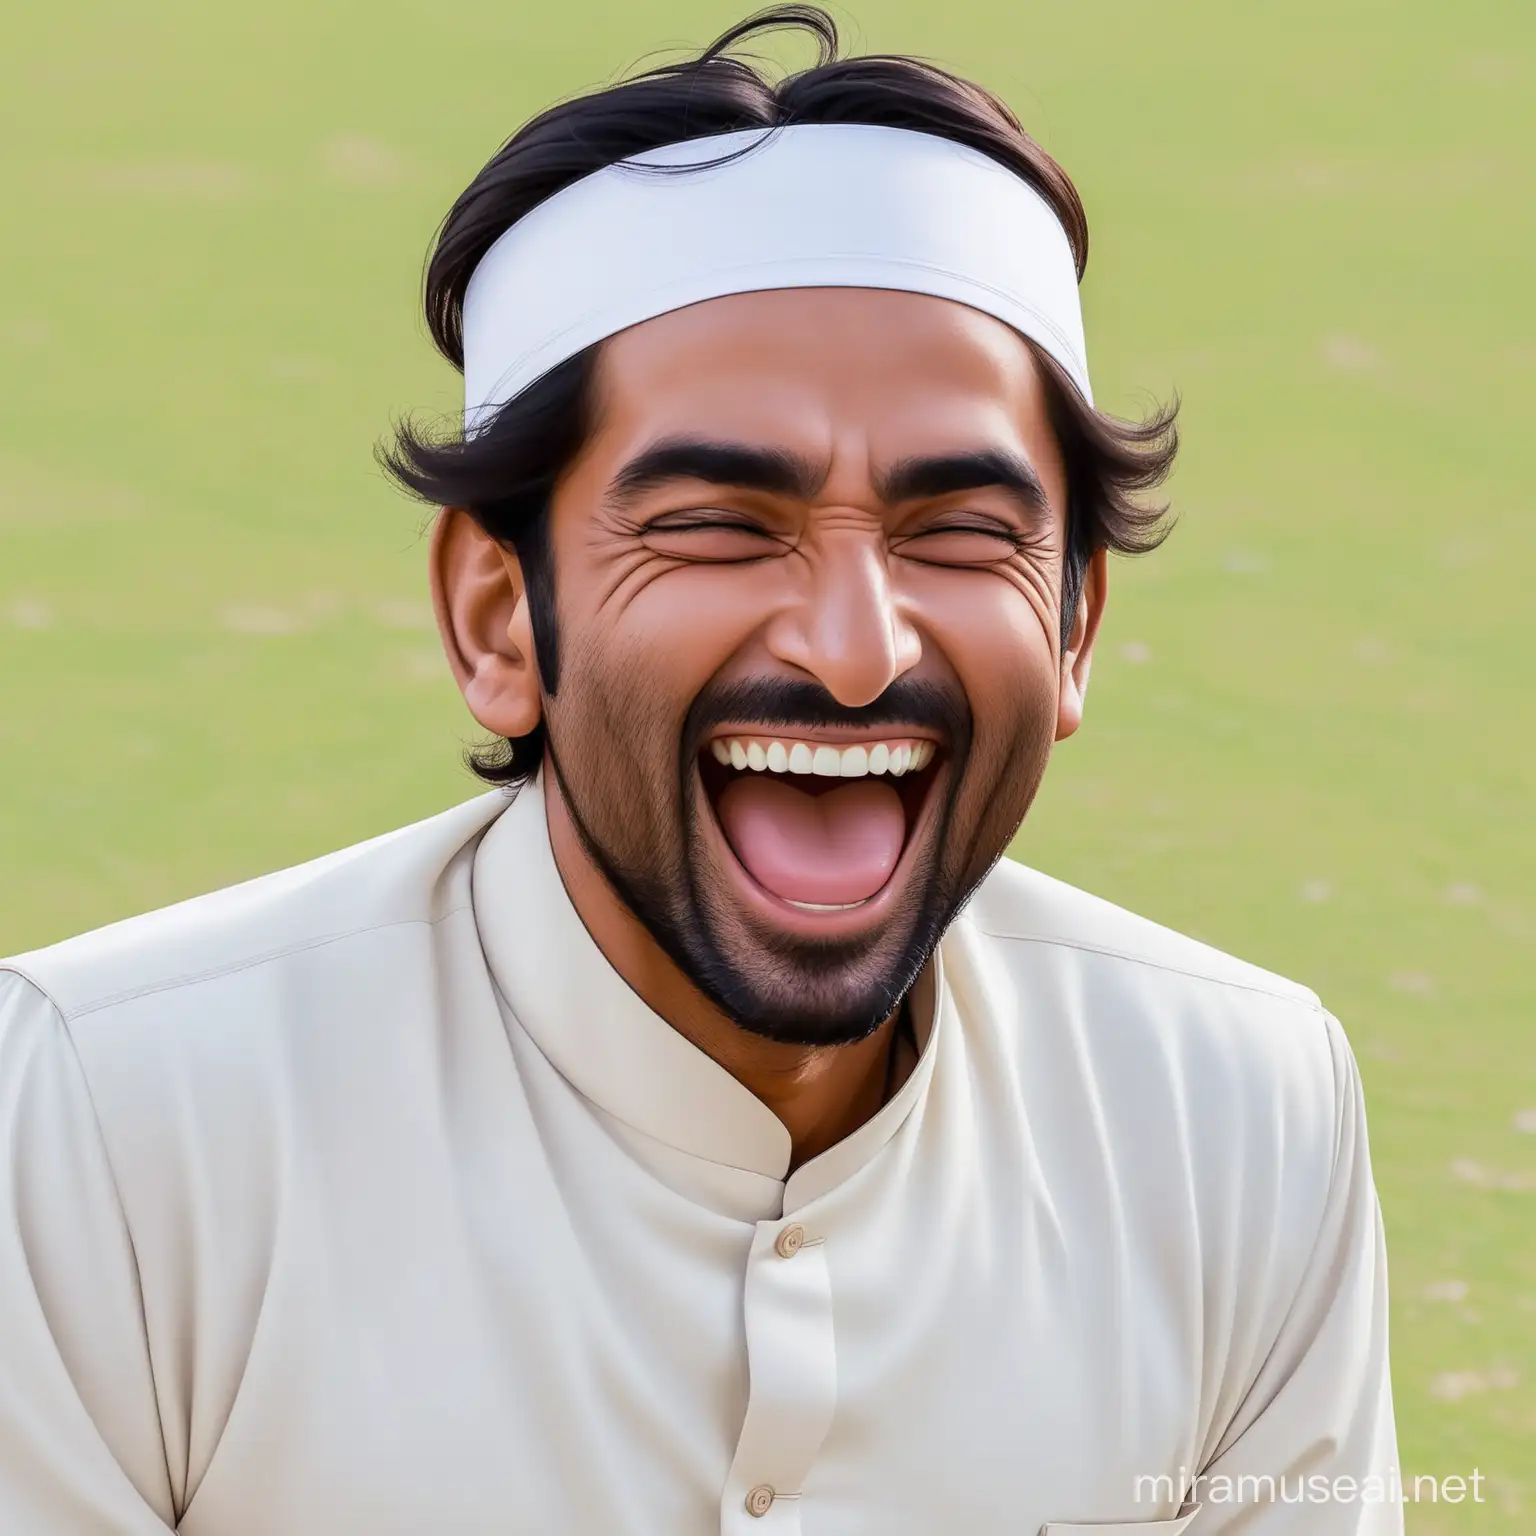 Pakistani Man Laughing Hilariously